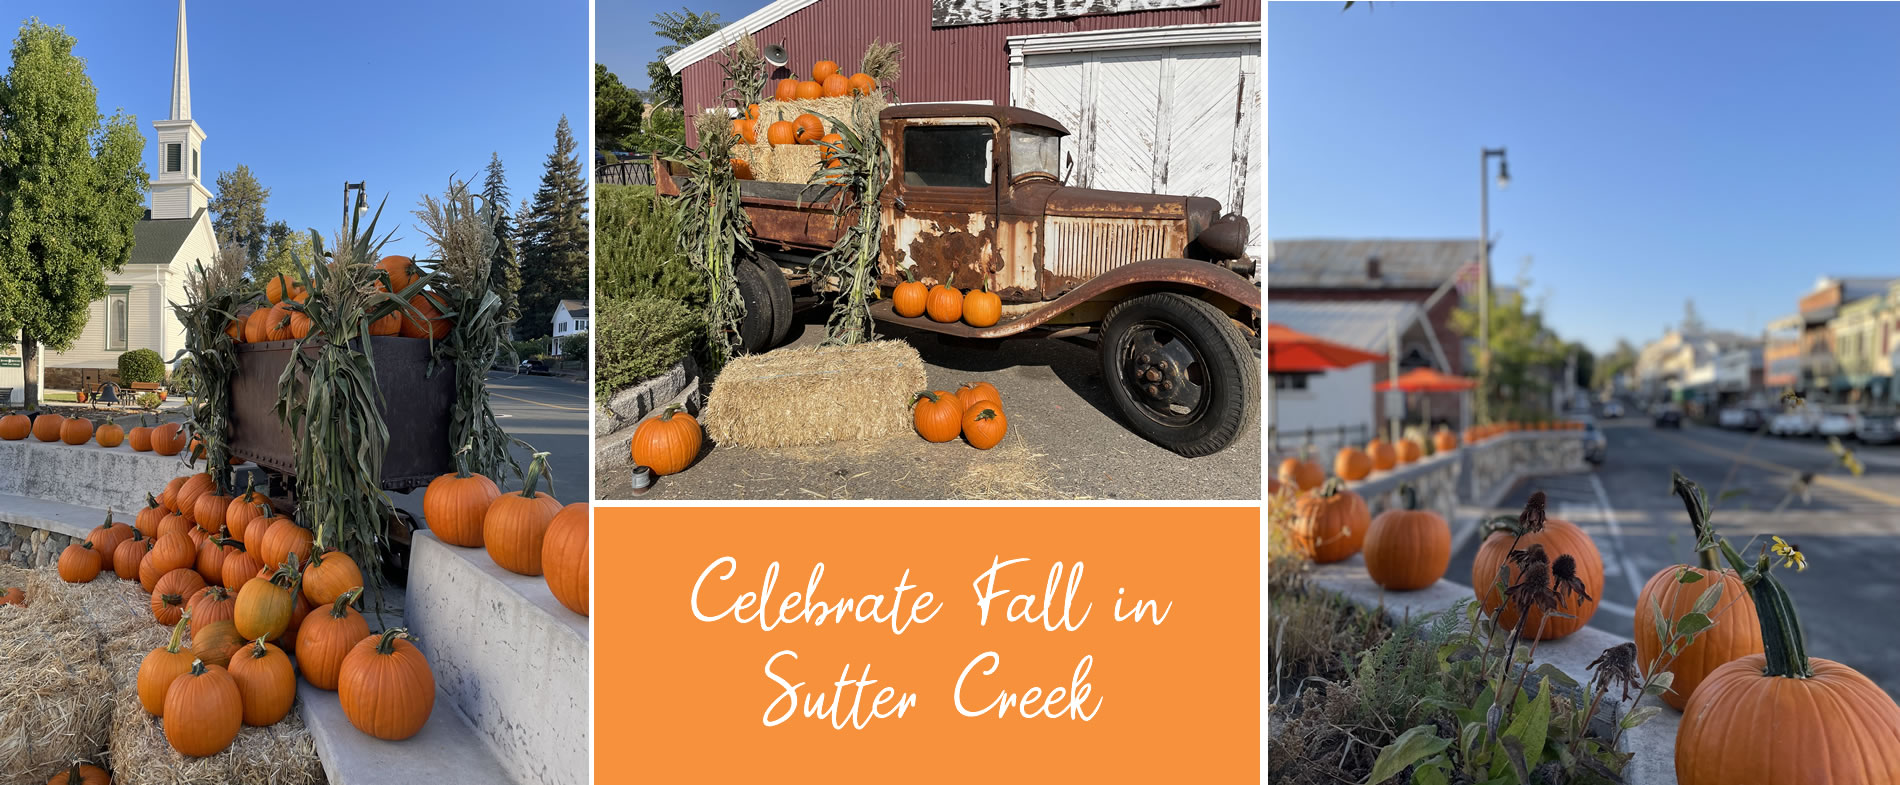 celebrate fall in sutter creek